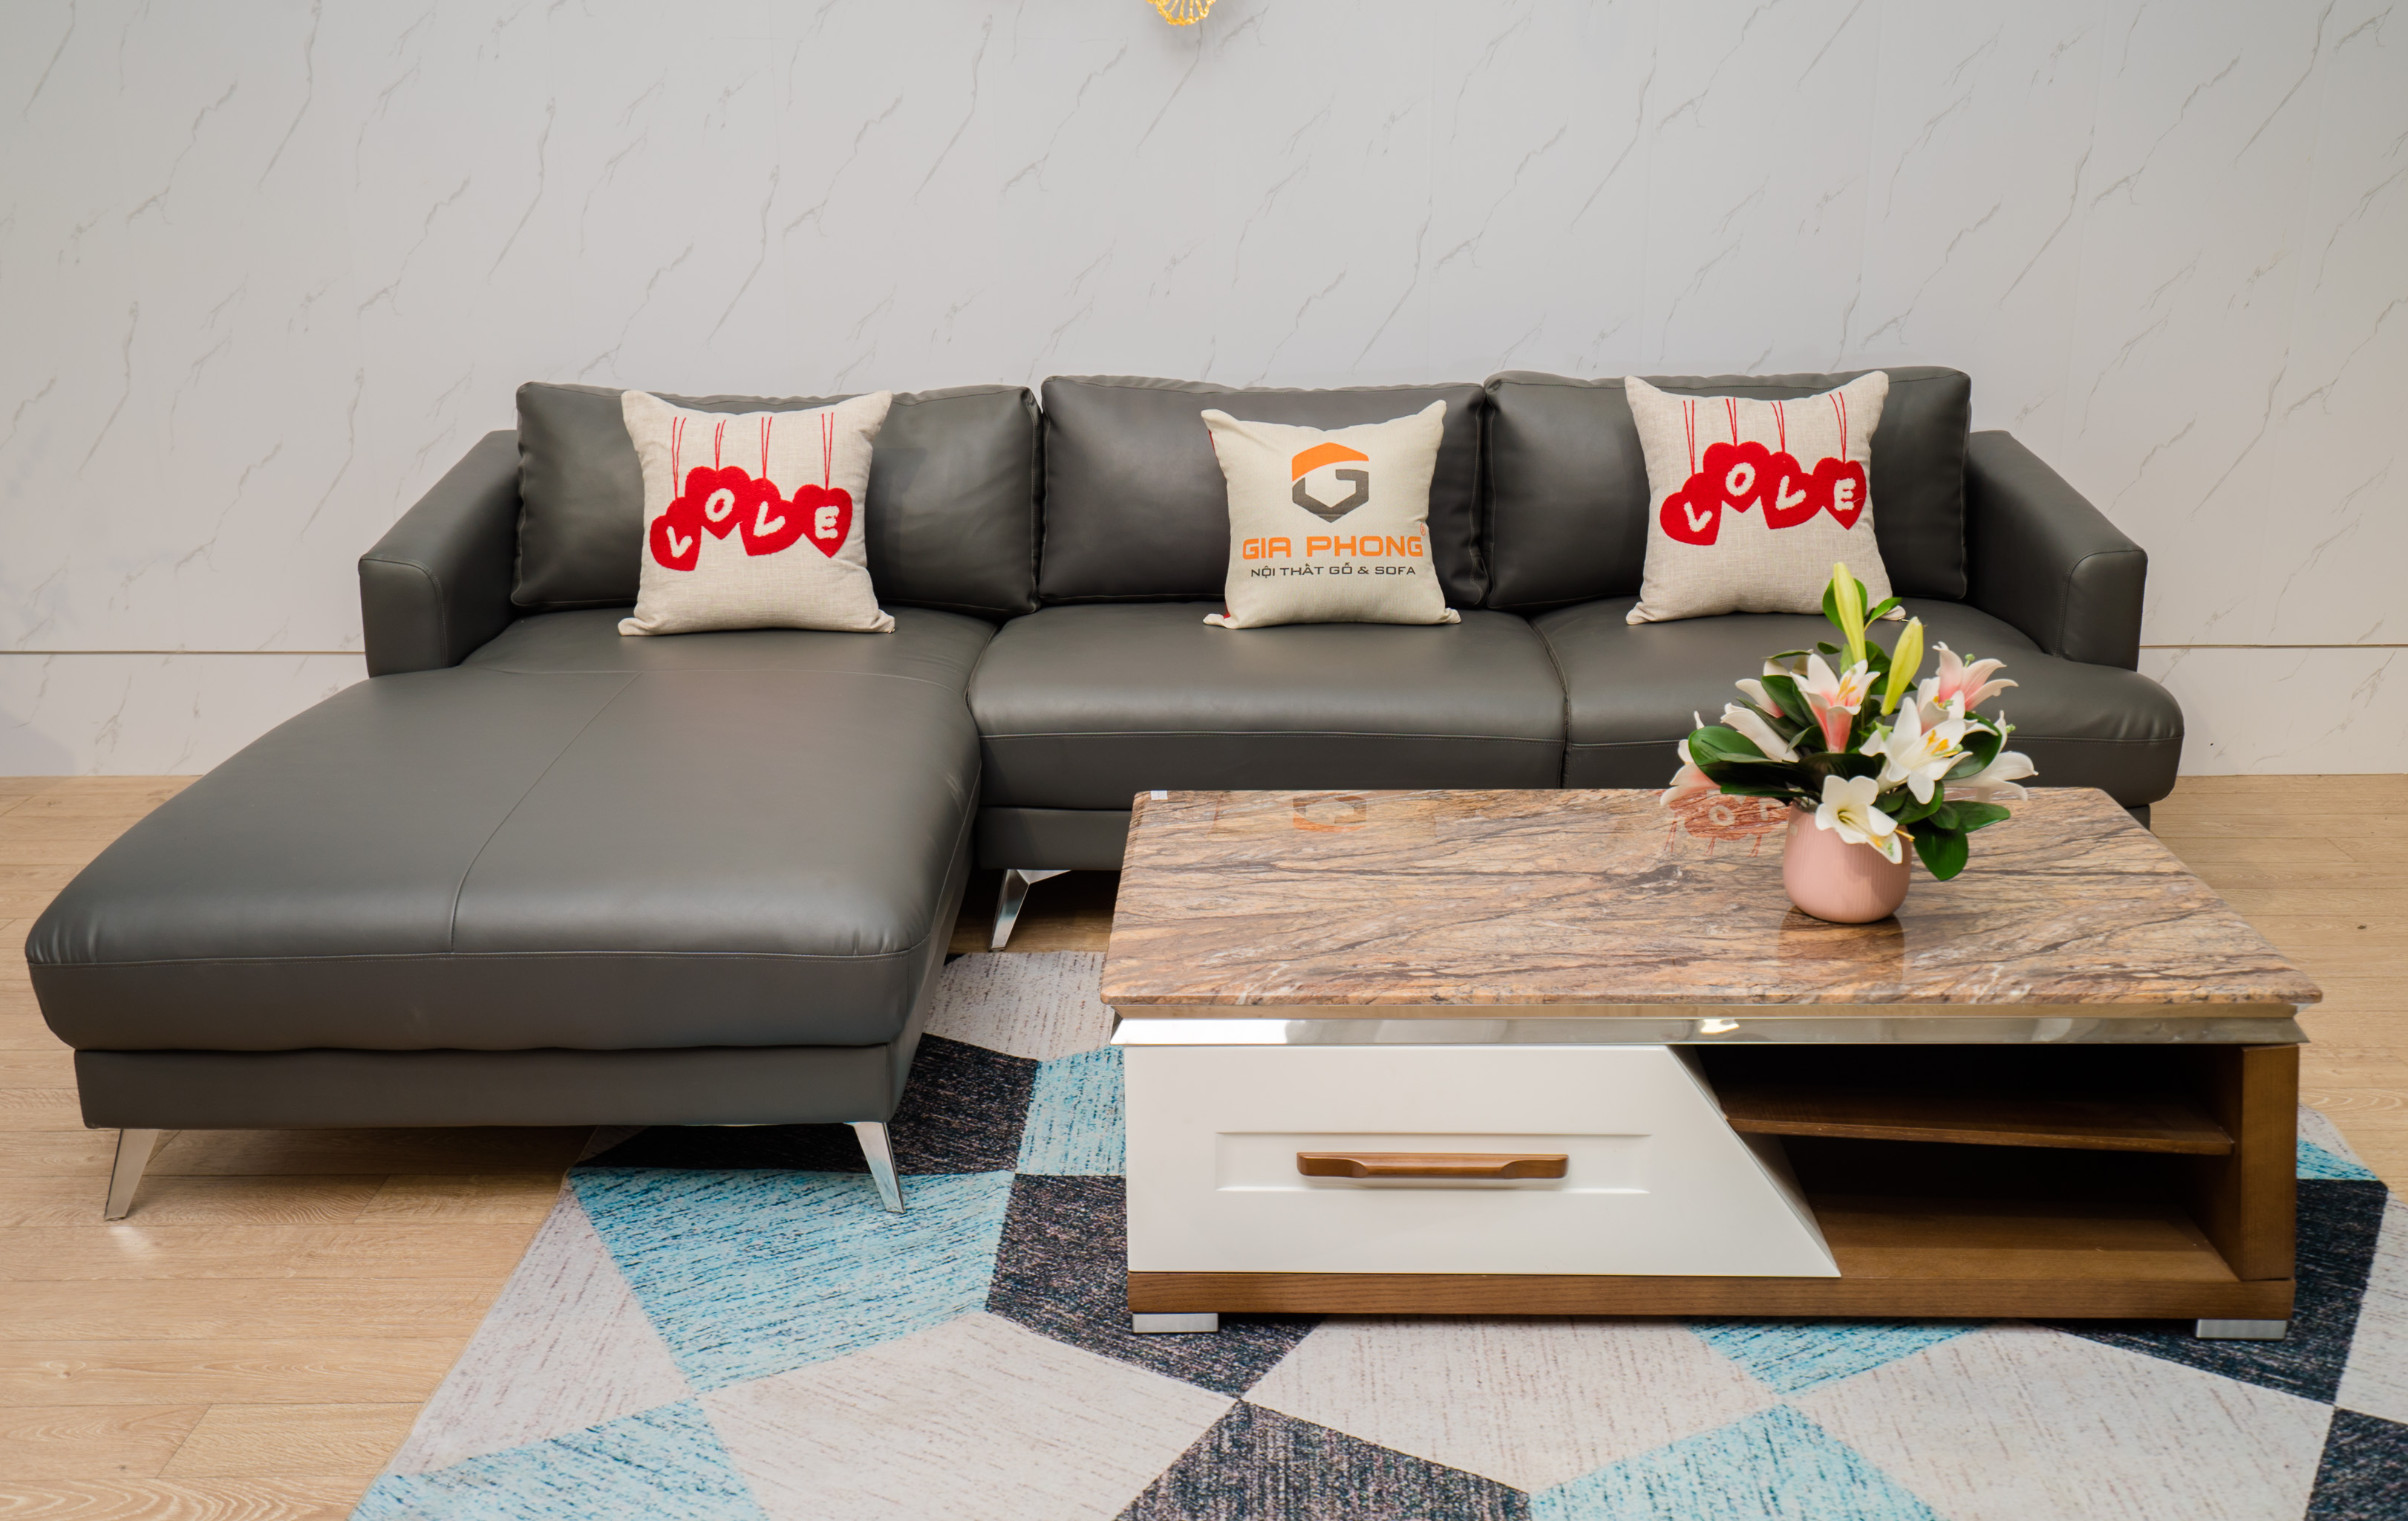 Xu hướng ghế Sofa phòng khách đẹp: Bạn yêu thích việc thiết kế và trang trí nội thất phòng khách? Bạn luôn tìm kiếm xu hướng mới nhất về ghế Sofa phòng khách đẹp? Hãy xem ngay hình ảnh và khám phá những xu hướng mới nhất cho ghế Sofa phòng khách đẹp và sang trọng.